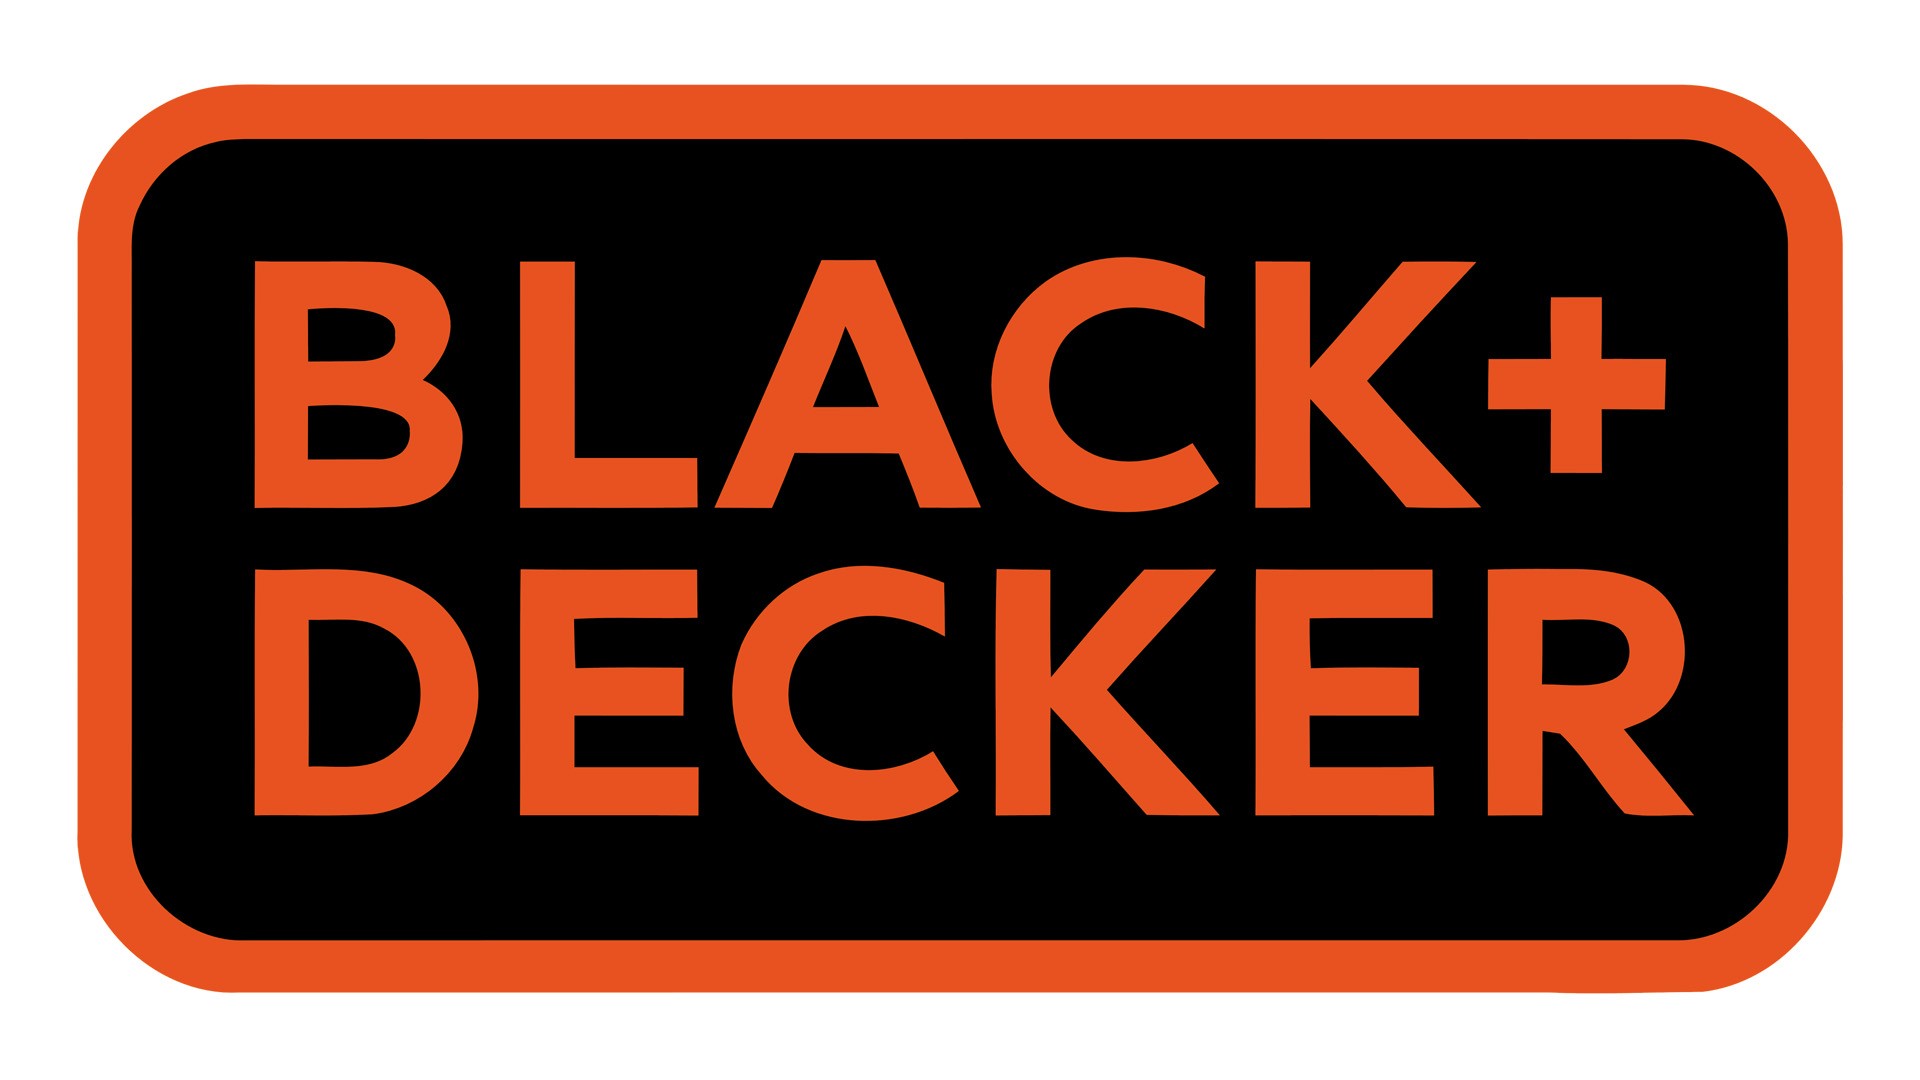 Black + decker